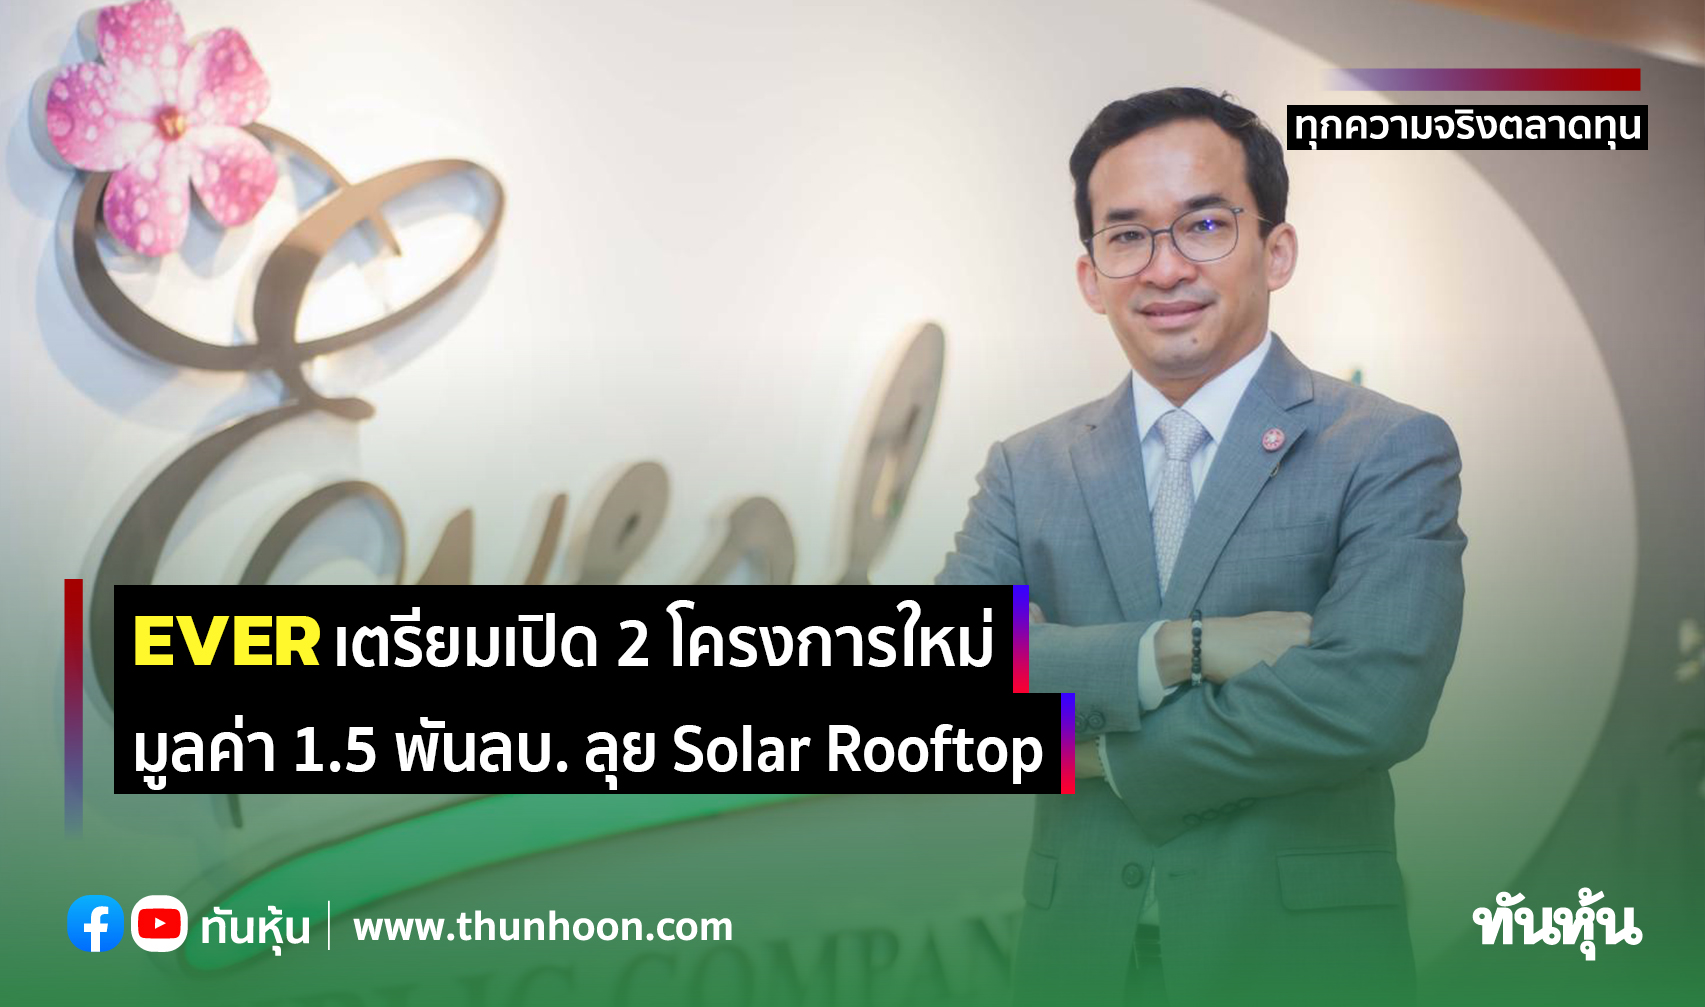 EVER เตรียมเปิด 2 โครงการใหม่ มูลค่า 1.5 พันลบ. ลุย Solar Rooftop 